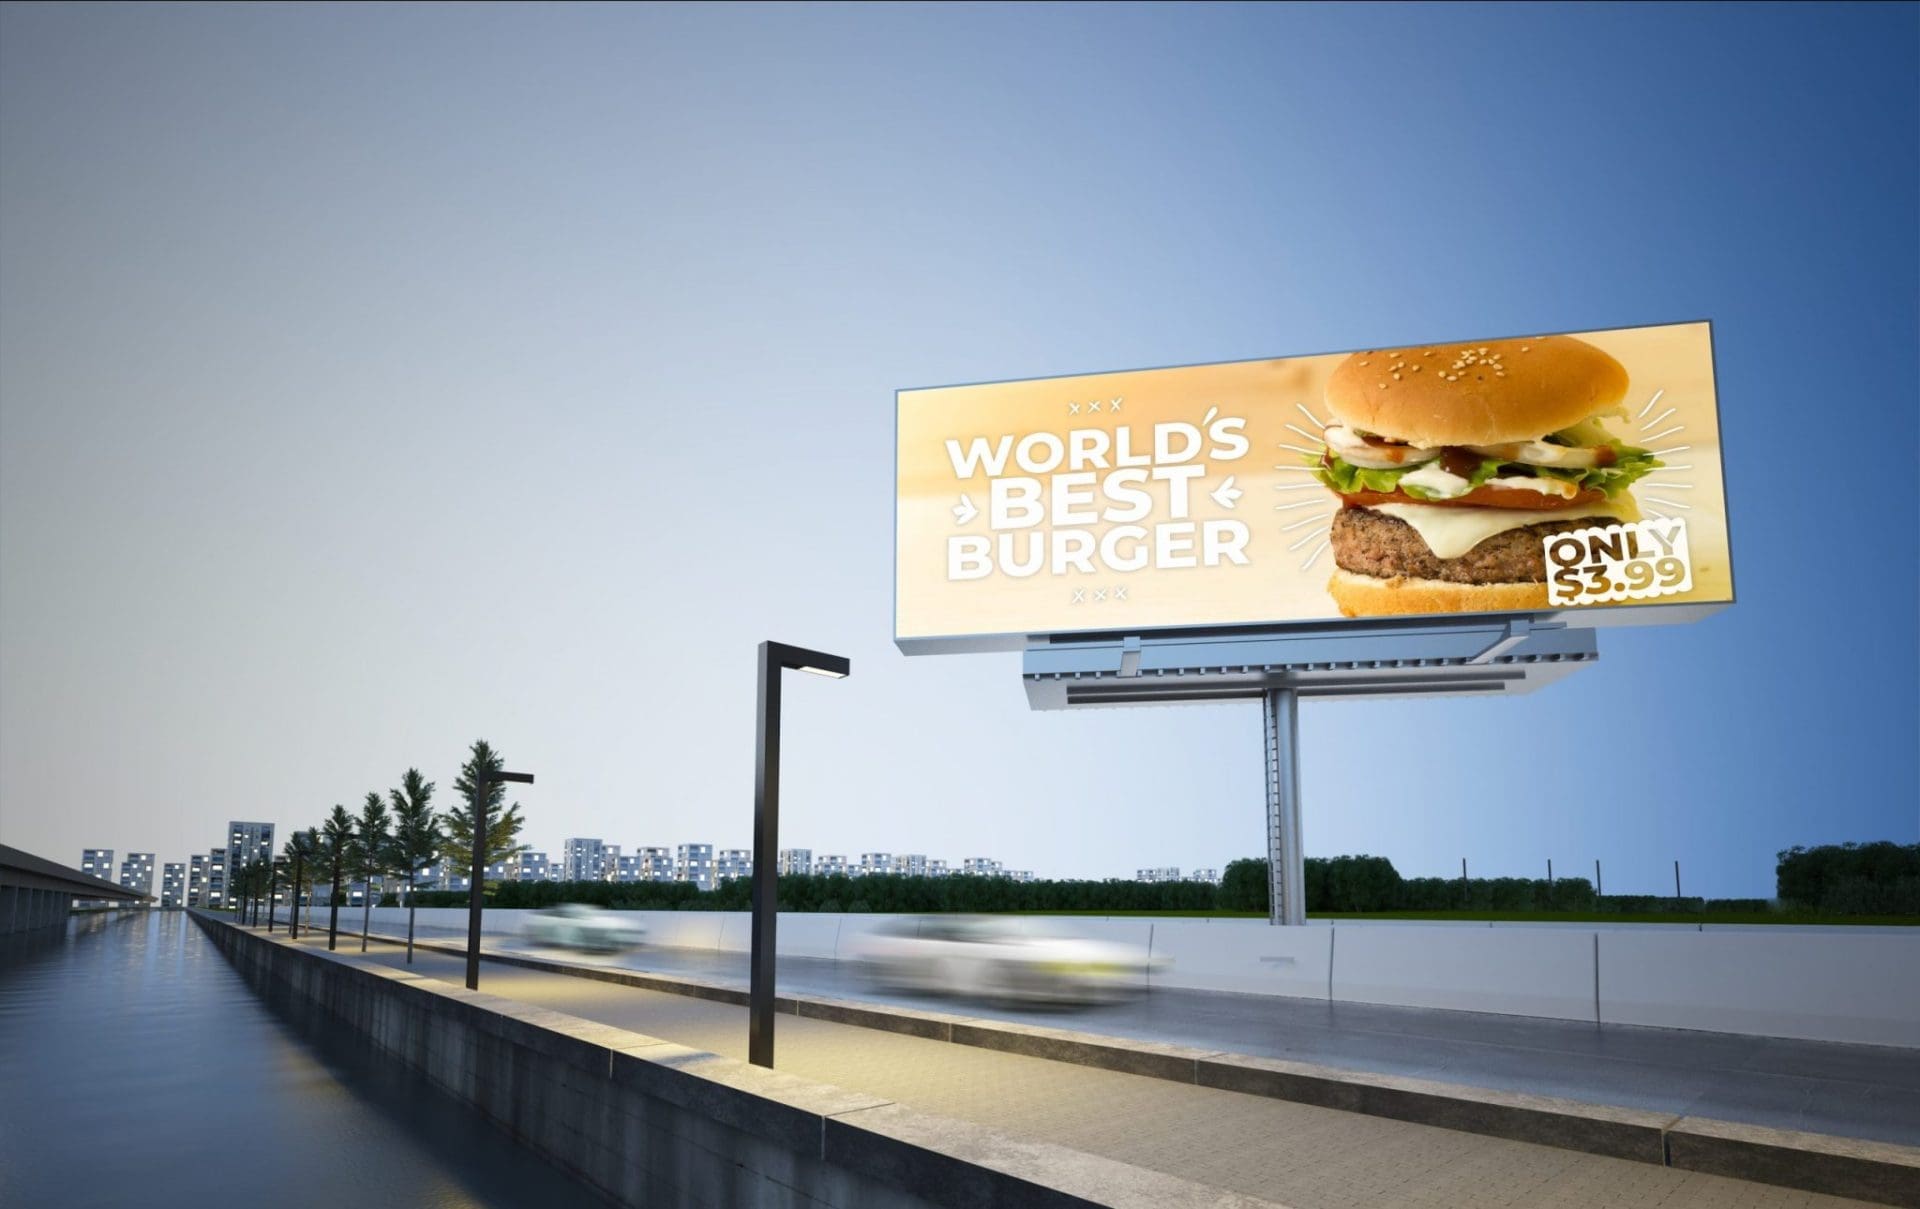 Worlds best burger billboard